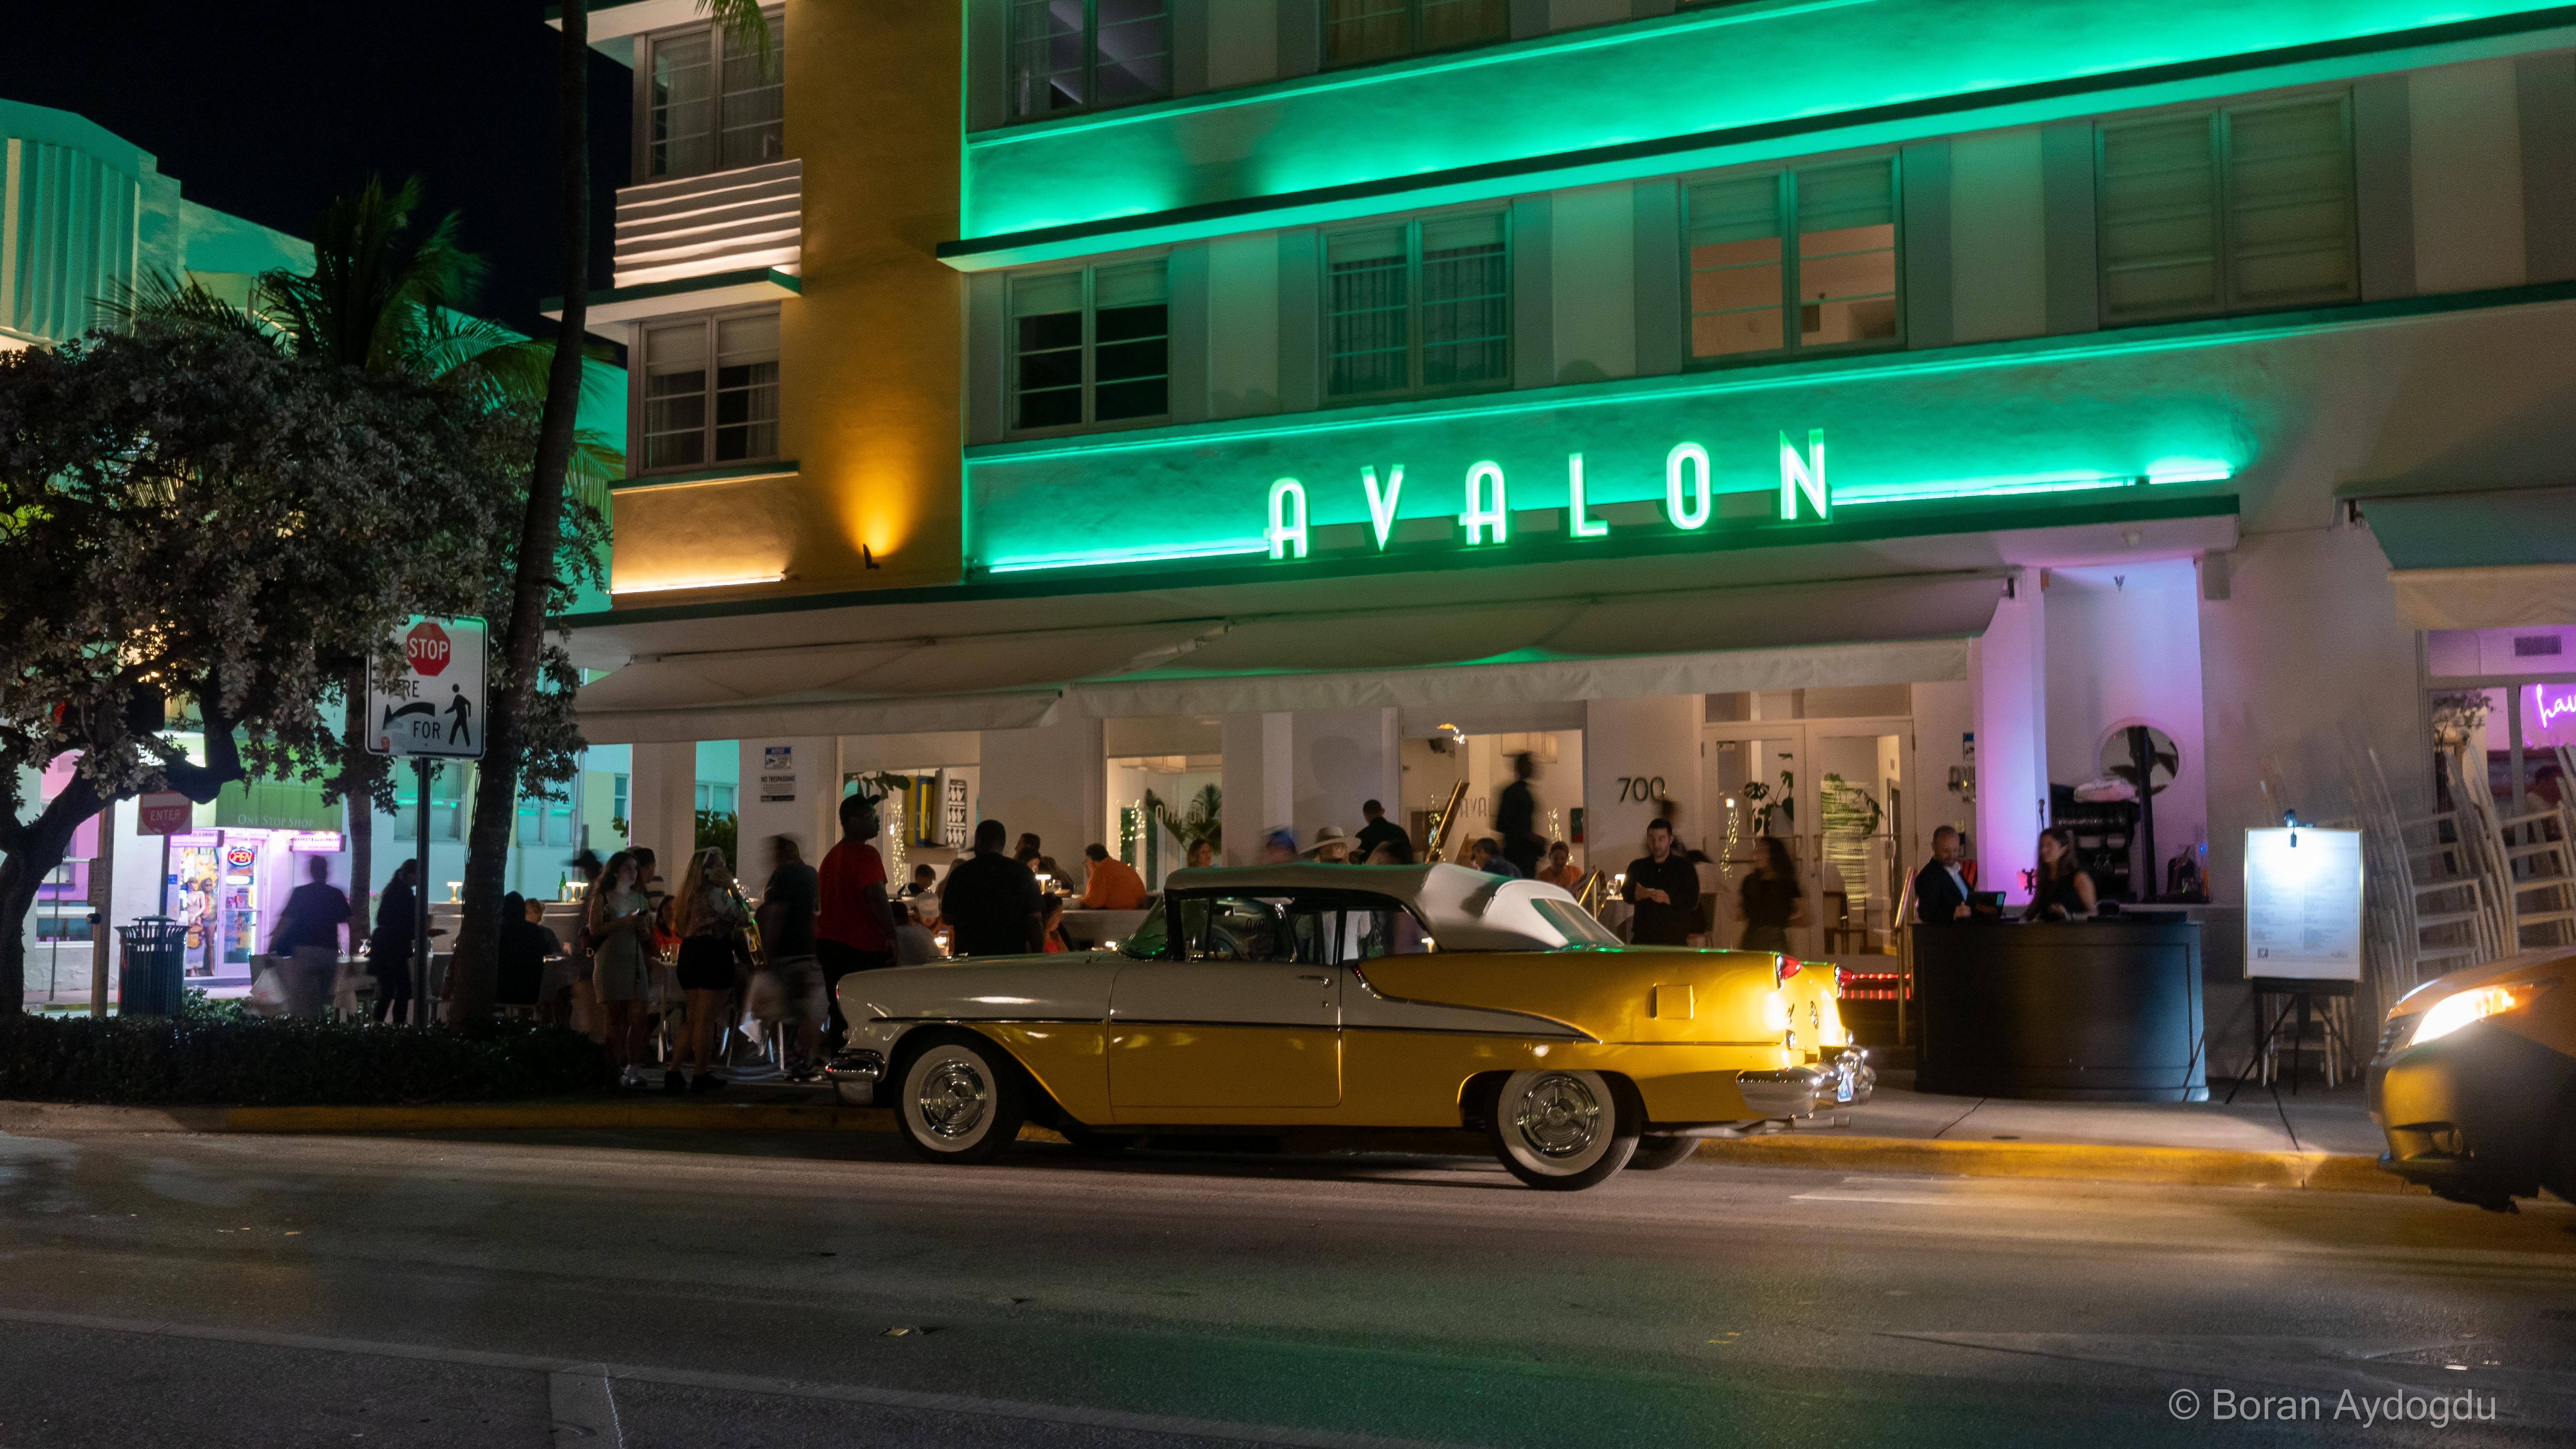 Das Avalon Hotel bei Nacht, gelber Oldtimer vorm Hotel. Frontview